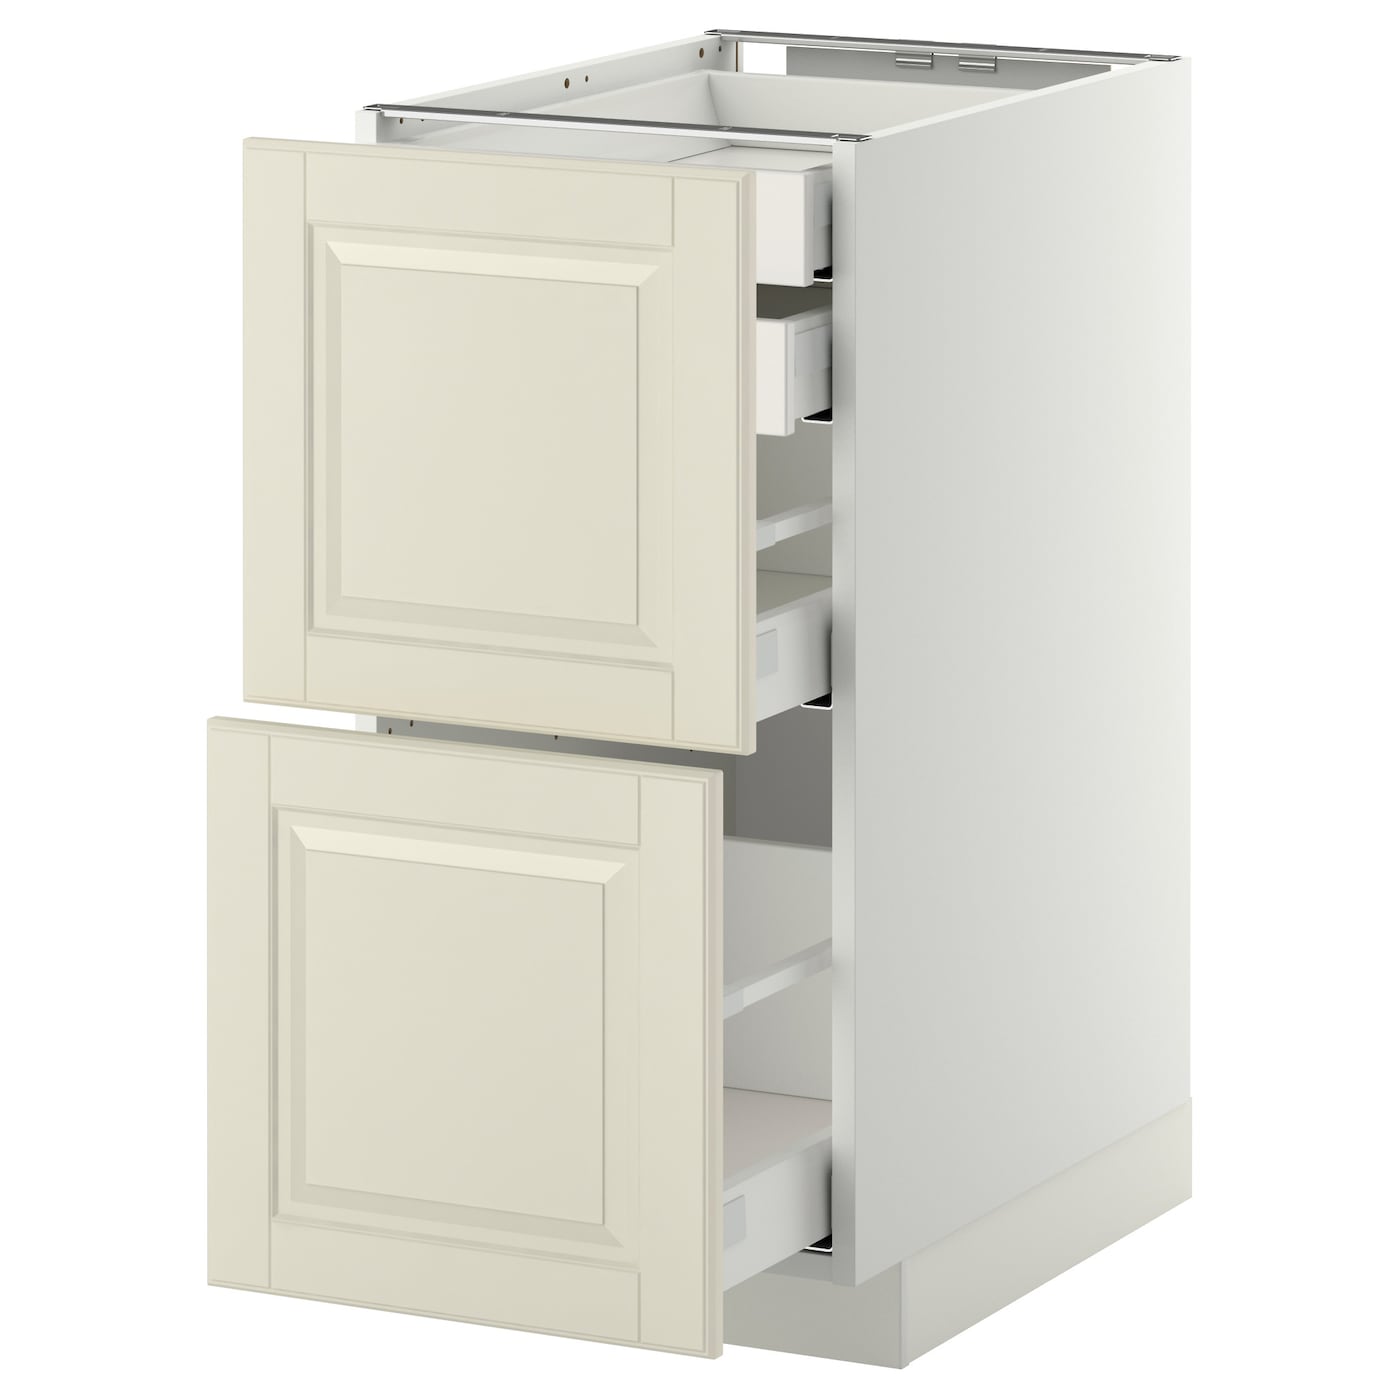 Напольный кухонный шкаф  - IKEA METOD MAXIMERA, 80x61,9x40см, белый/бежевый, МЕТОД МАКСИМЕРА ИКЕА